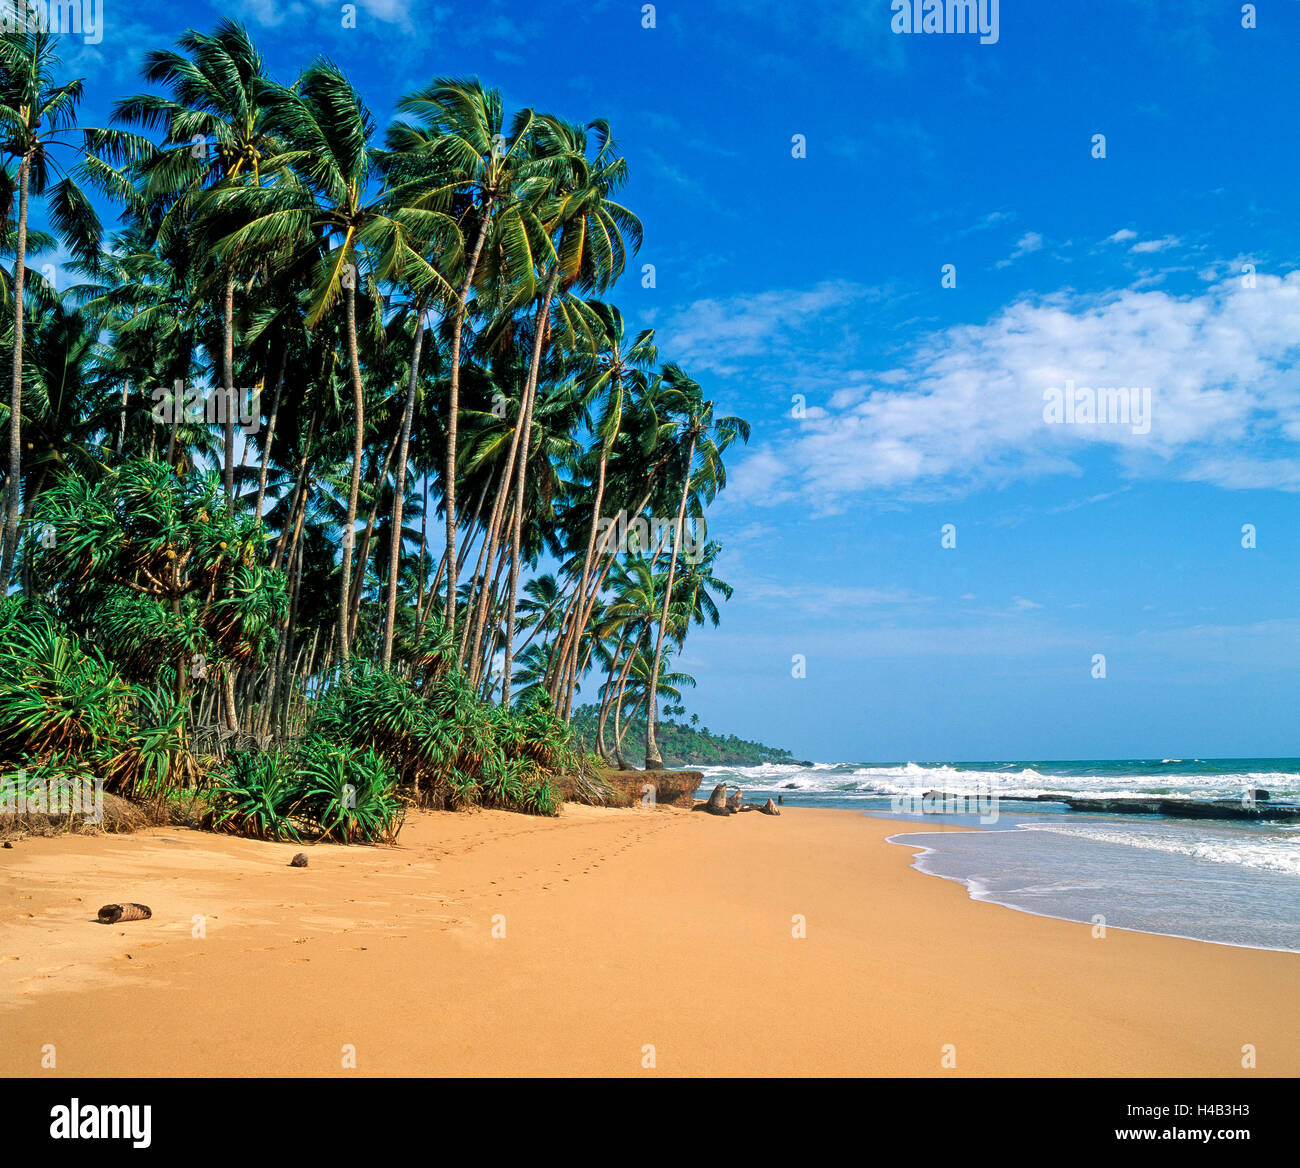 Palm beach, traumhaften Sandstrand, indischen Ozean, noch unentdeckt, Urlaubsparadies Stockfoto